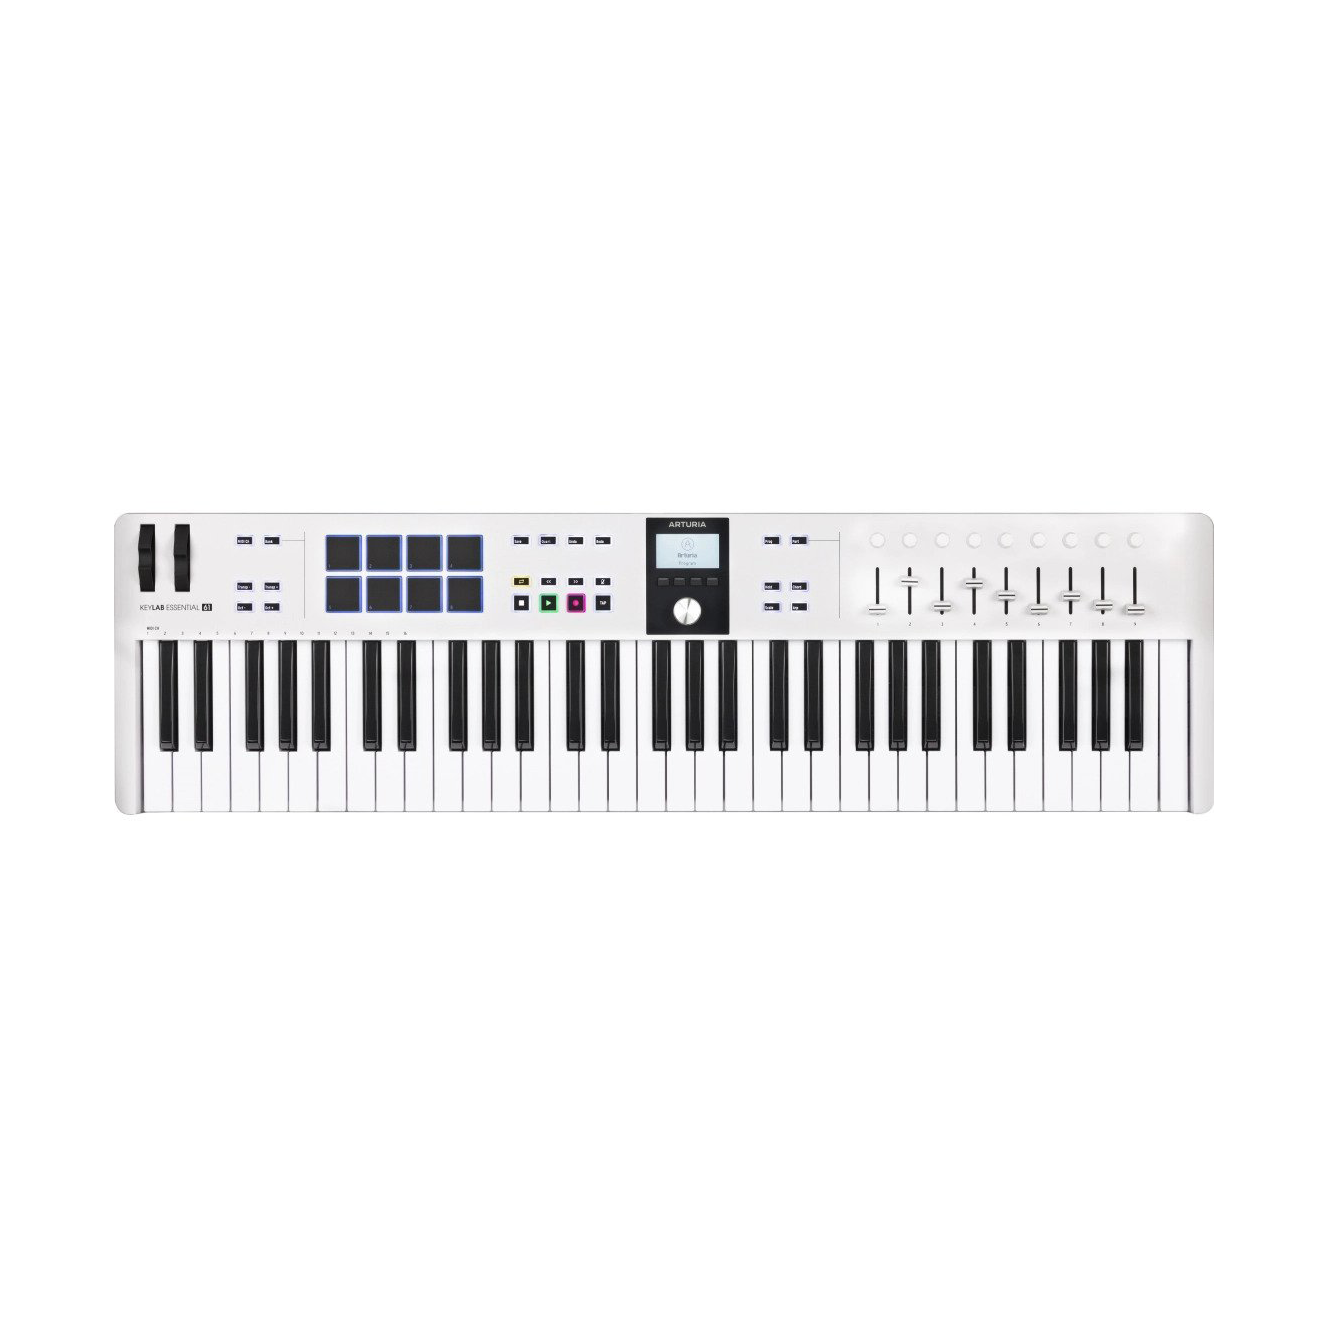 Arturia KeyLab Essential 61 MK3 Universal MIDI Controller Keyboard